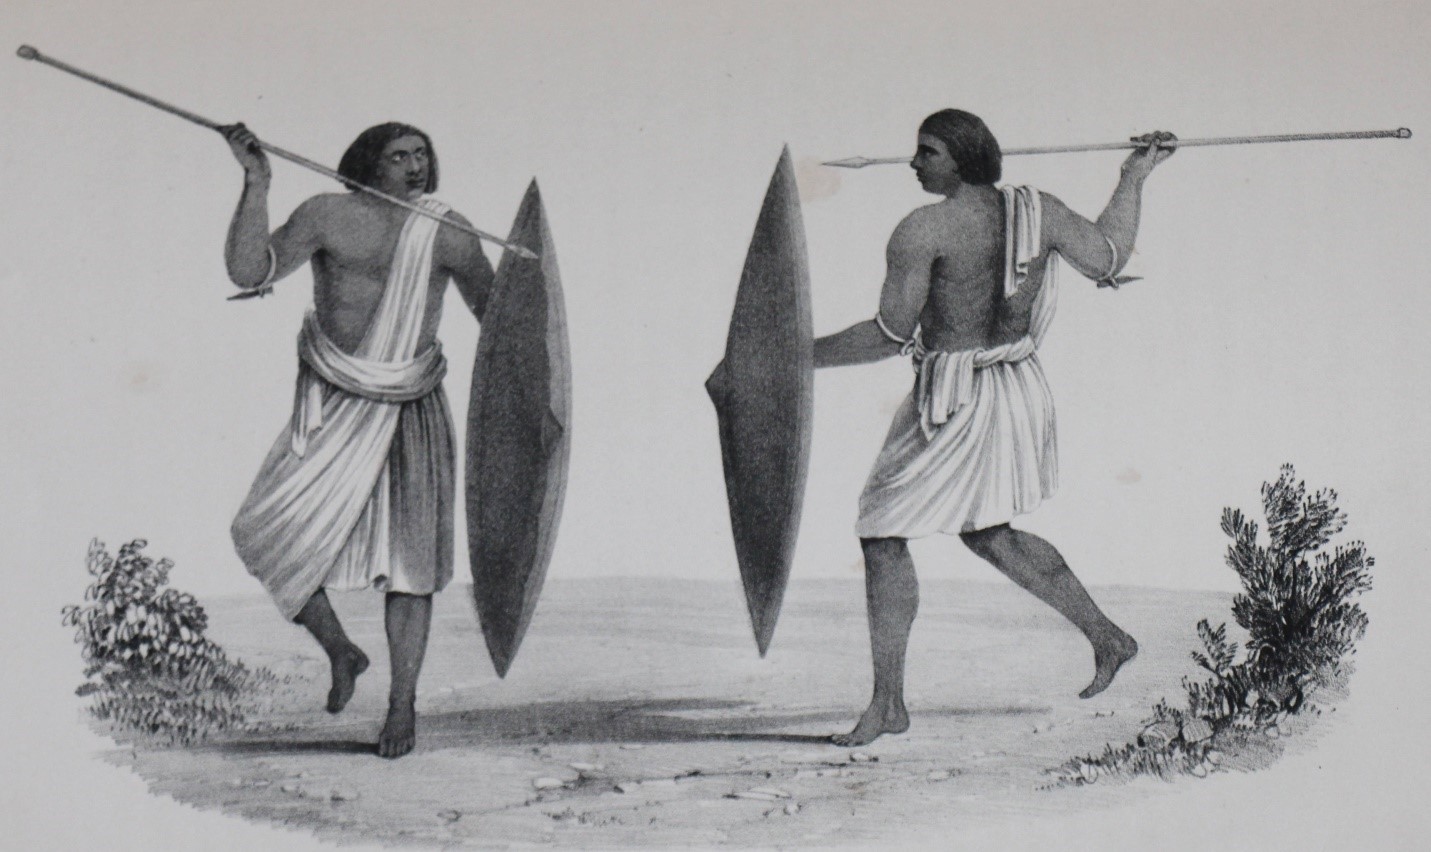 محاربون من قبائل الشايقية - القرن التاسع عشر